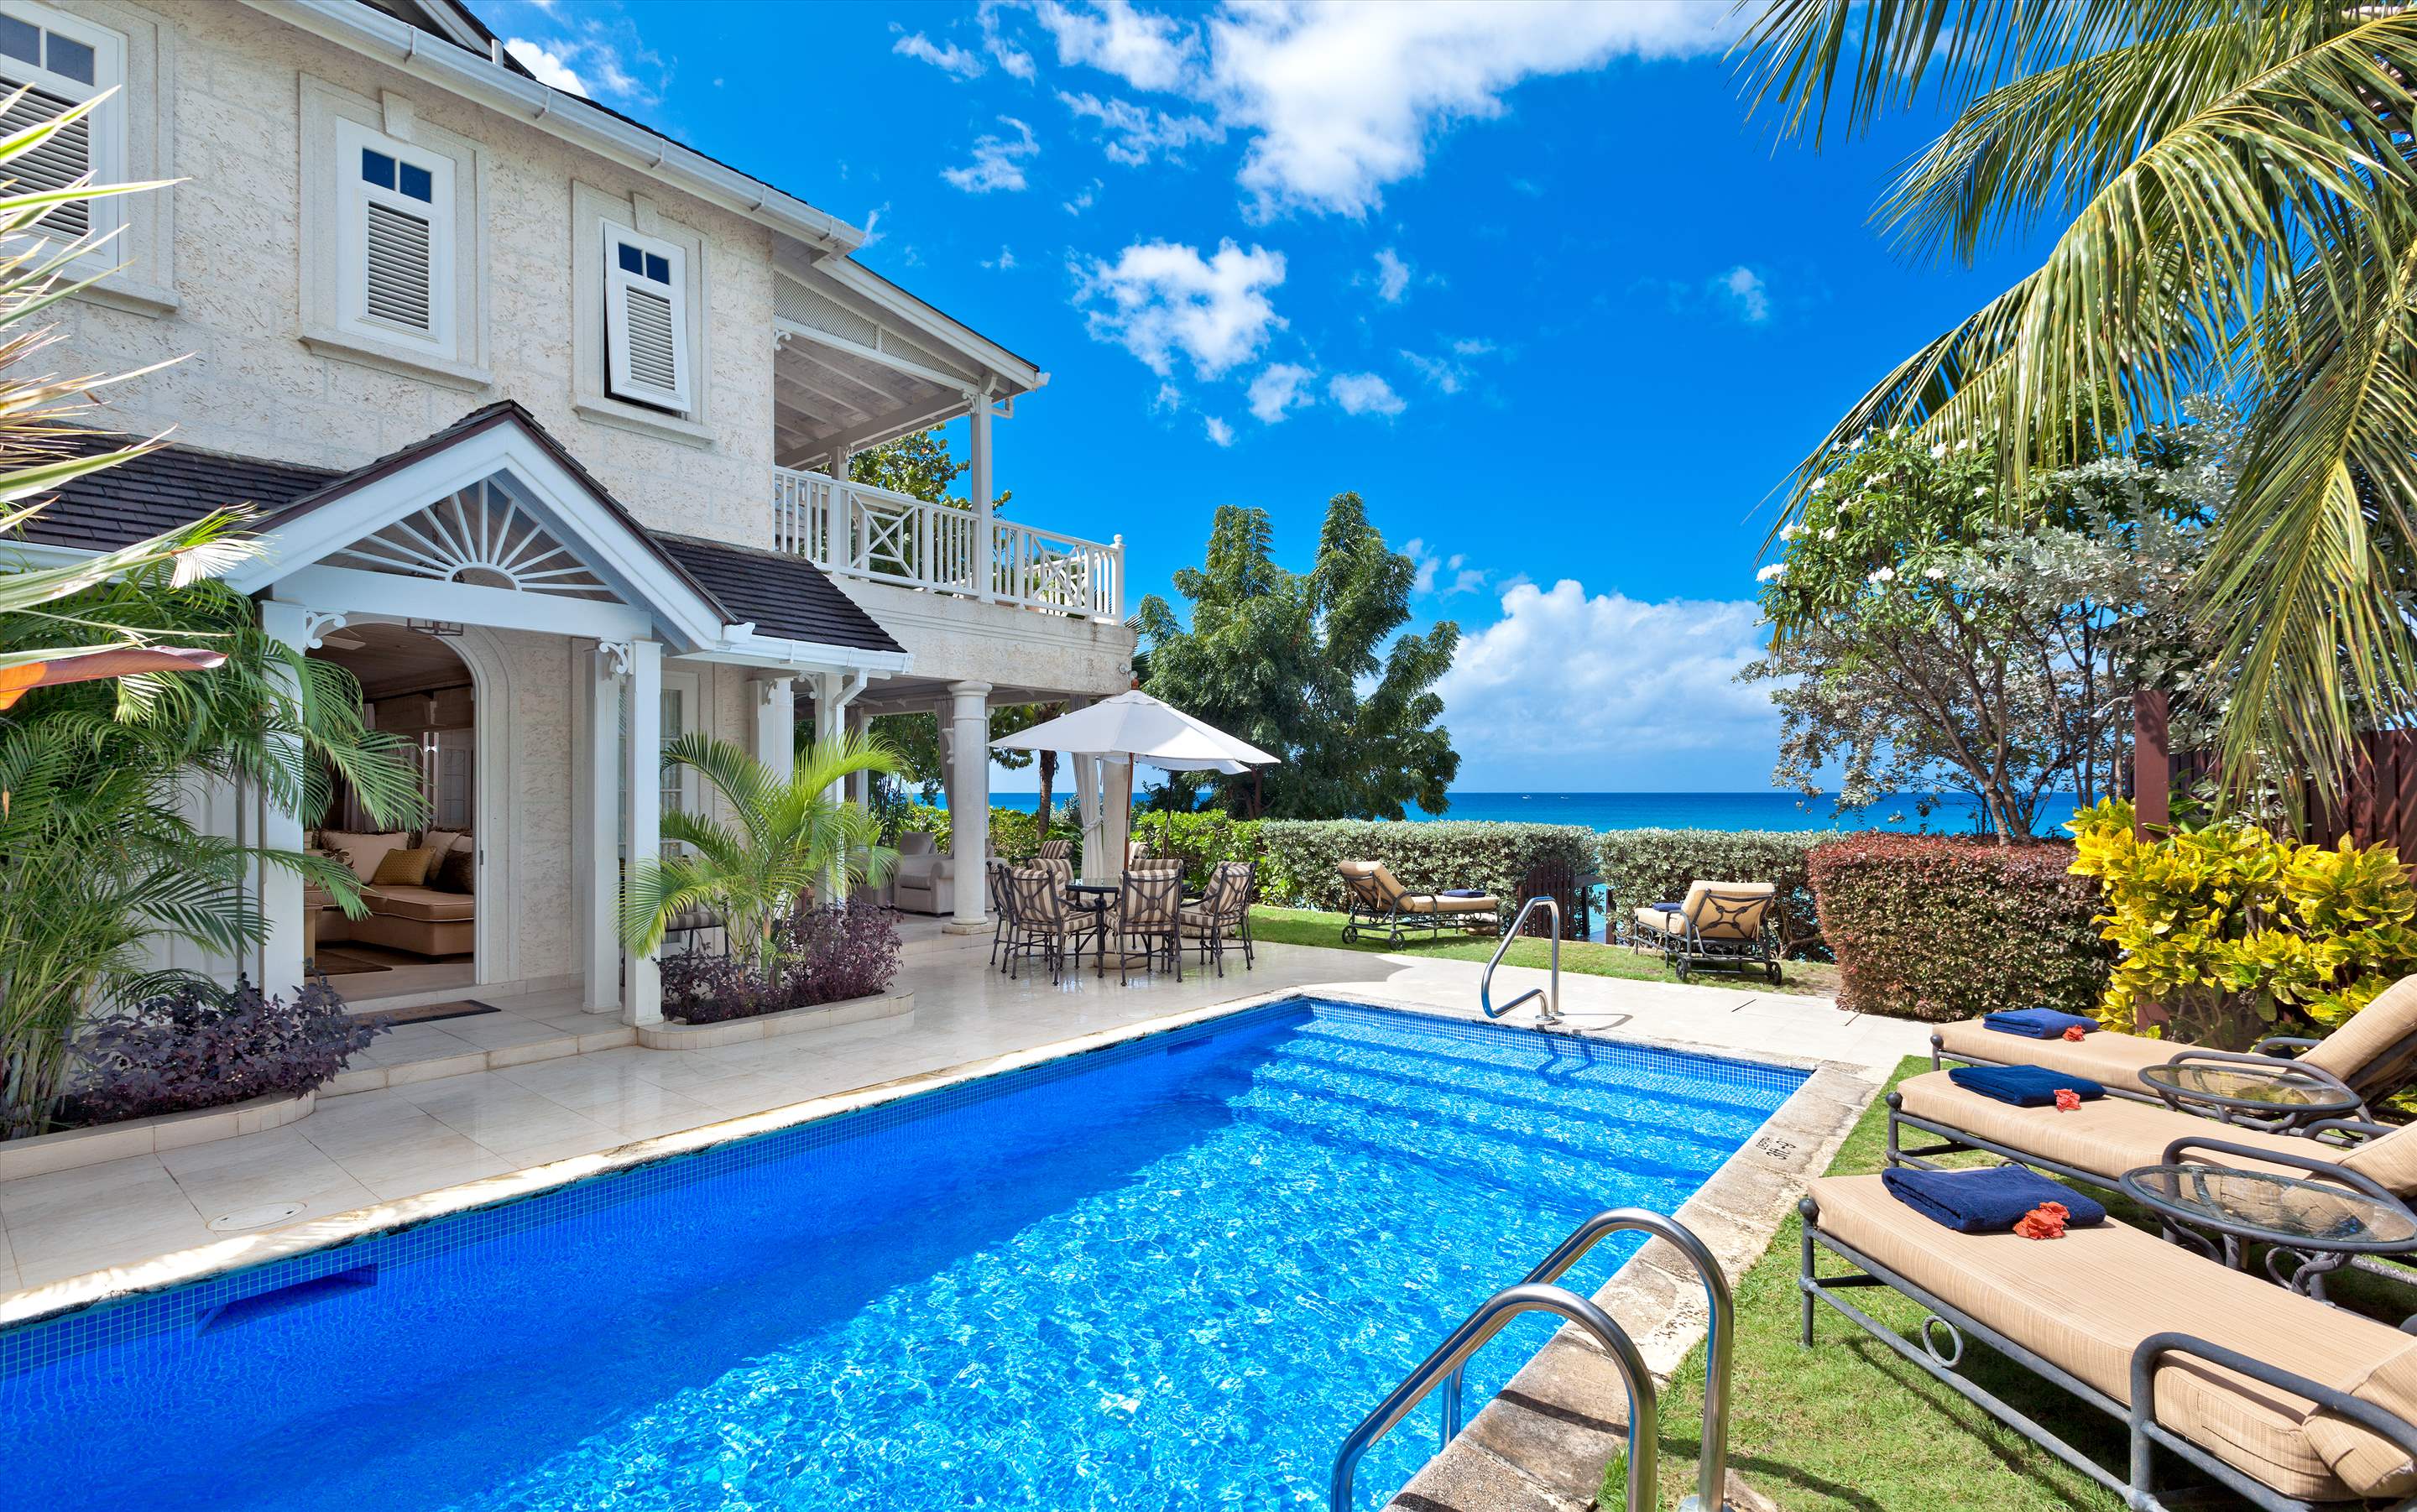 Westhaven, 4 bedroom villa in St. James & West Coast, Barbados Photo #1